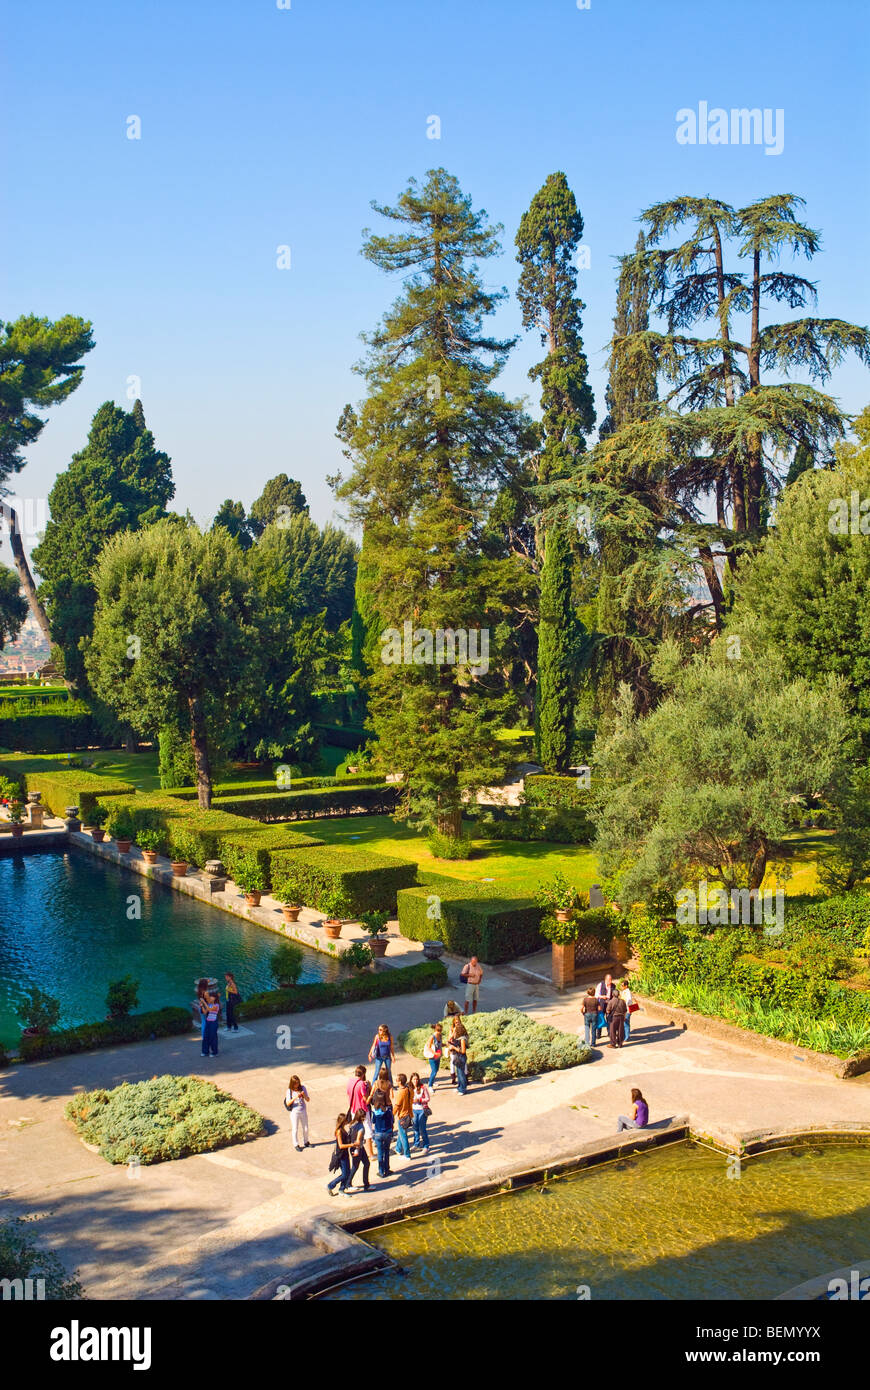 Les touristes à la Fontaine de Neptune Villa D'Este, Tivoli, Italie Banque D'Images